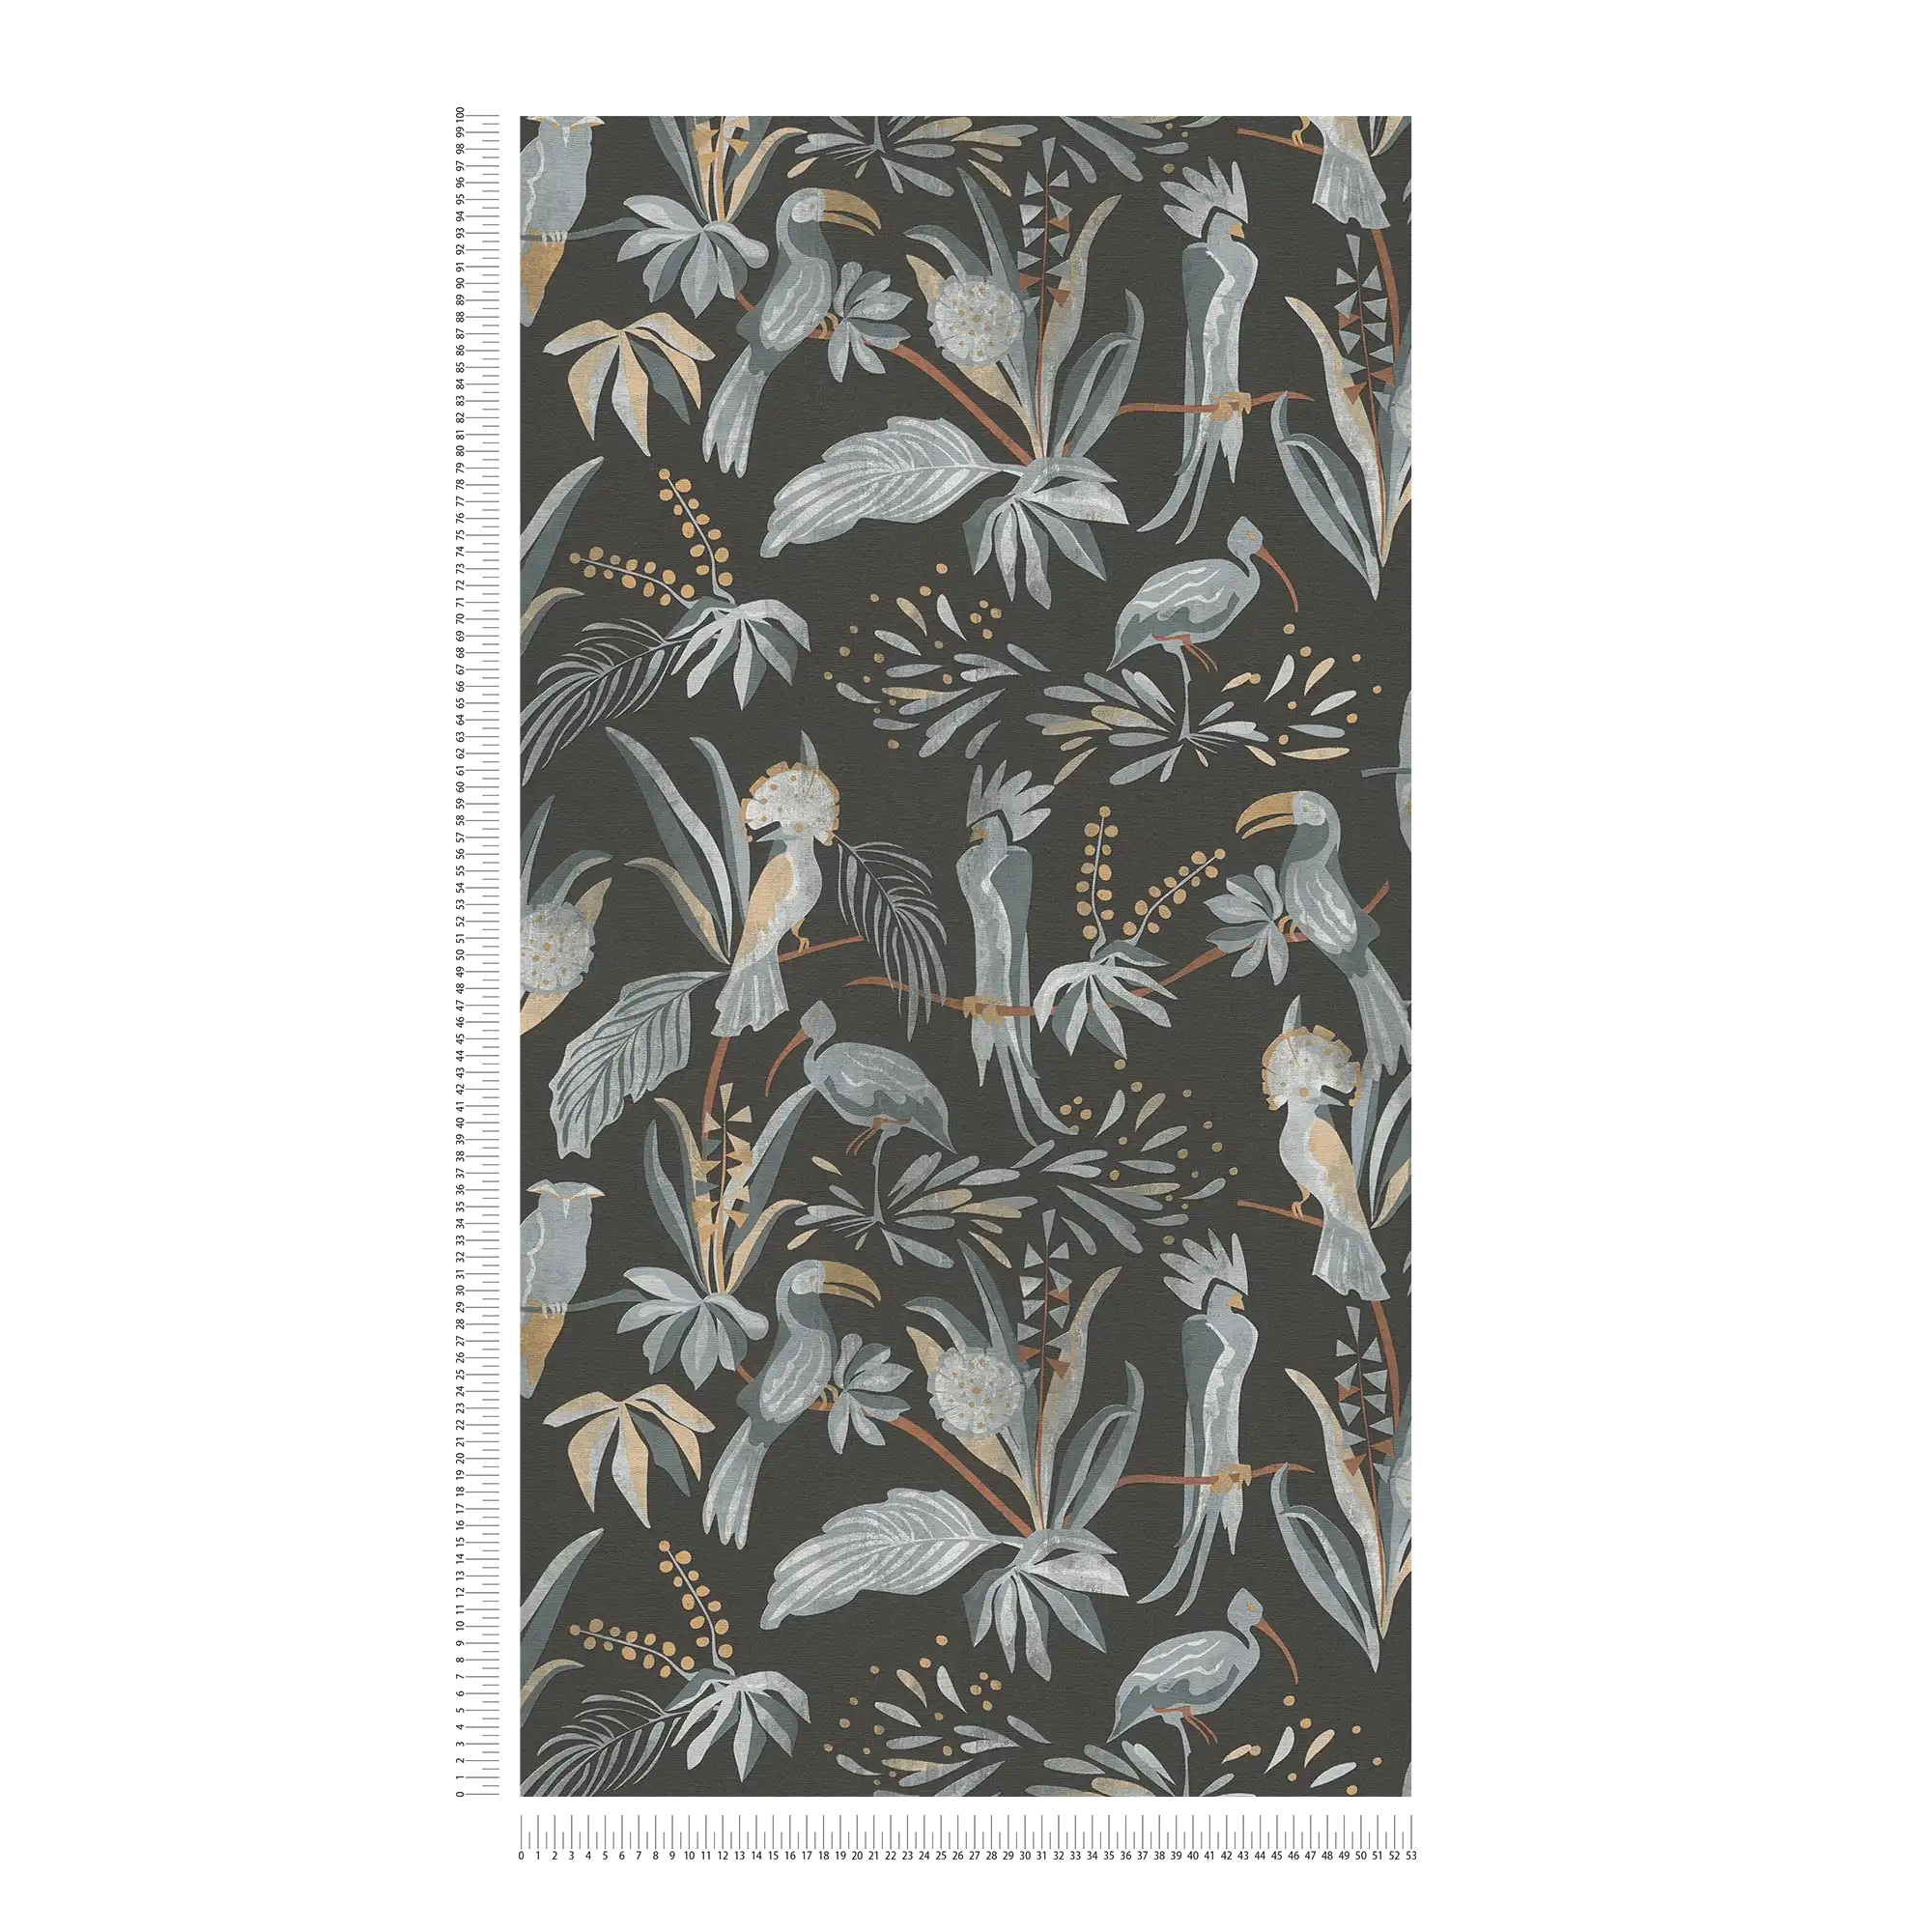             Tapete mit Dschungelpflanzen und Vögeln – Schwarz, Grau, Beige
        